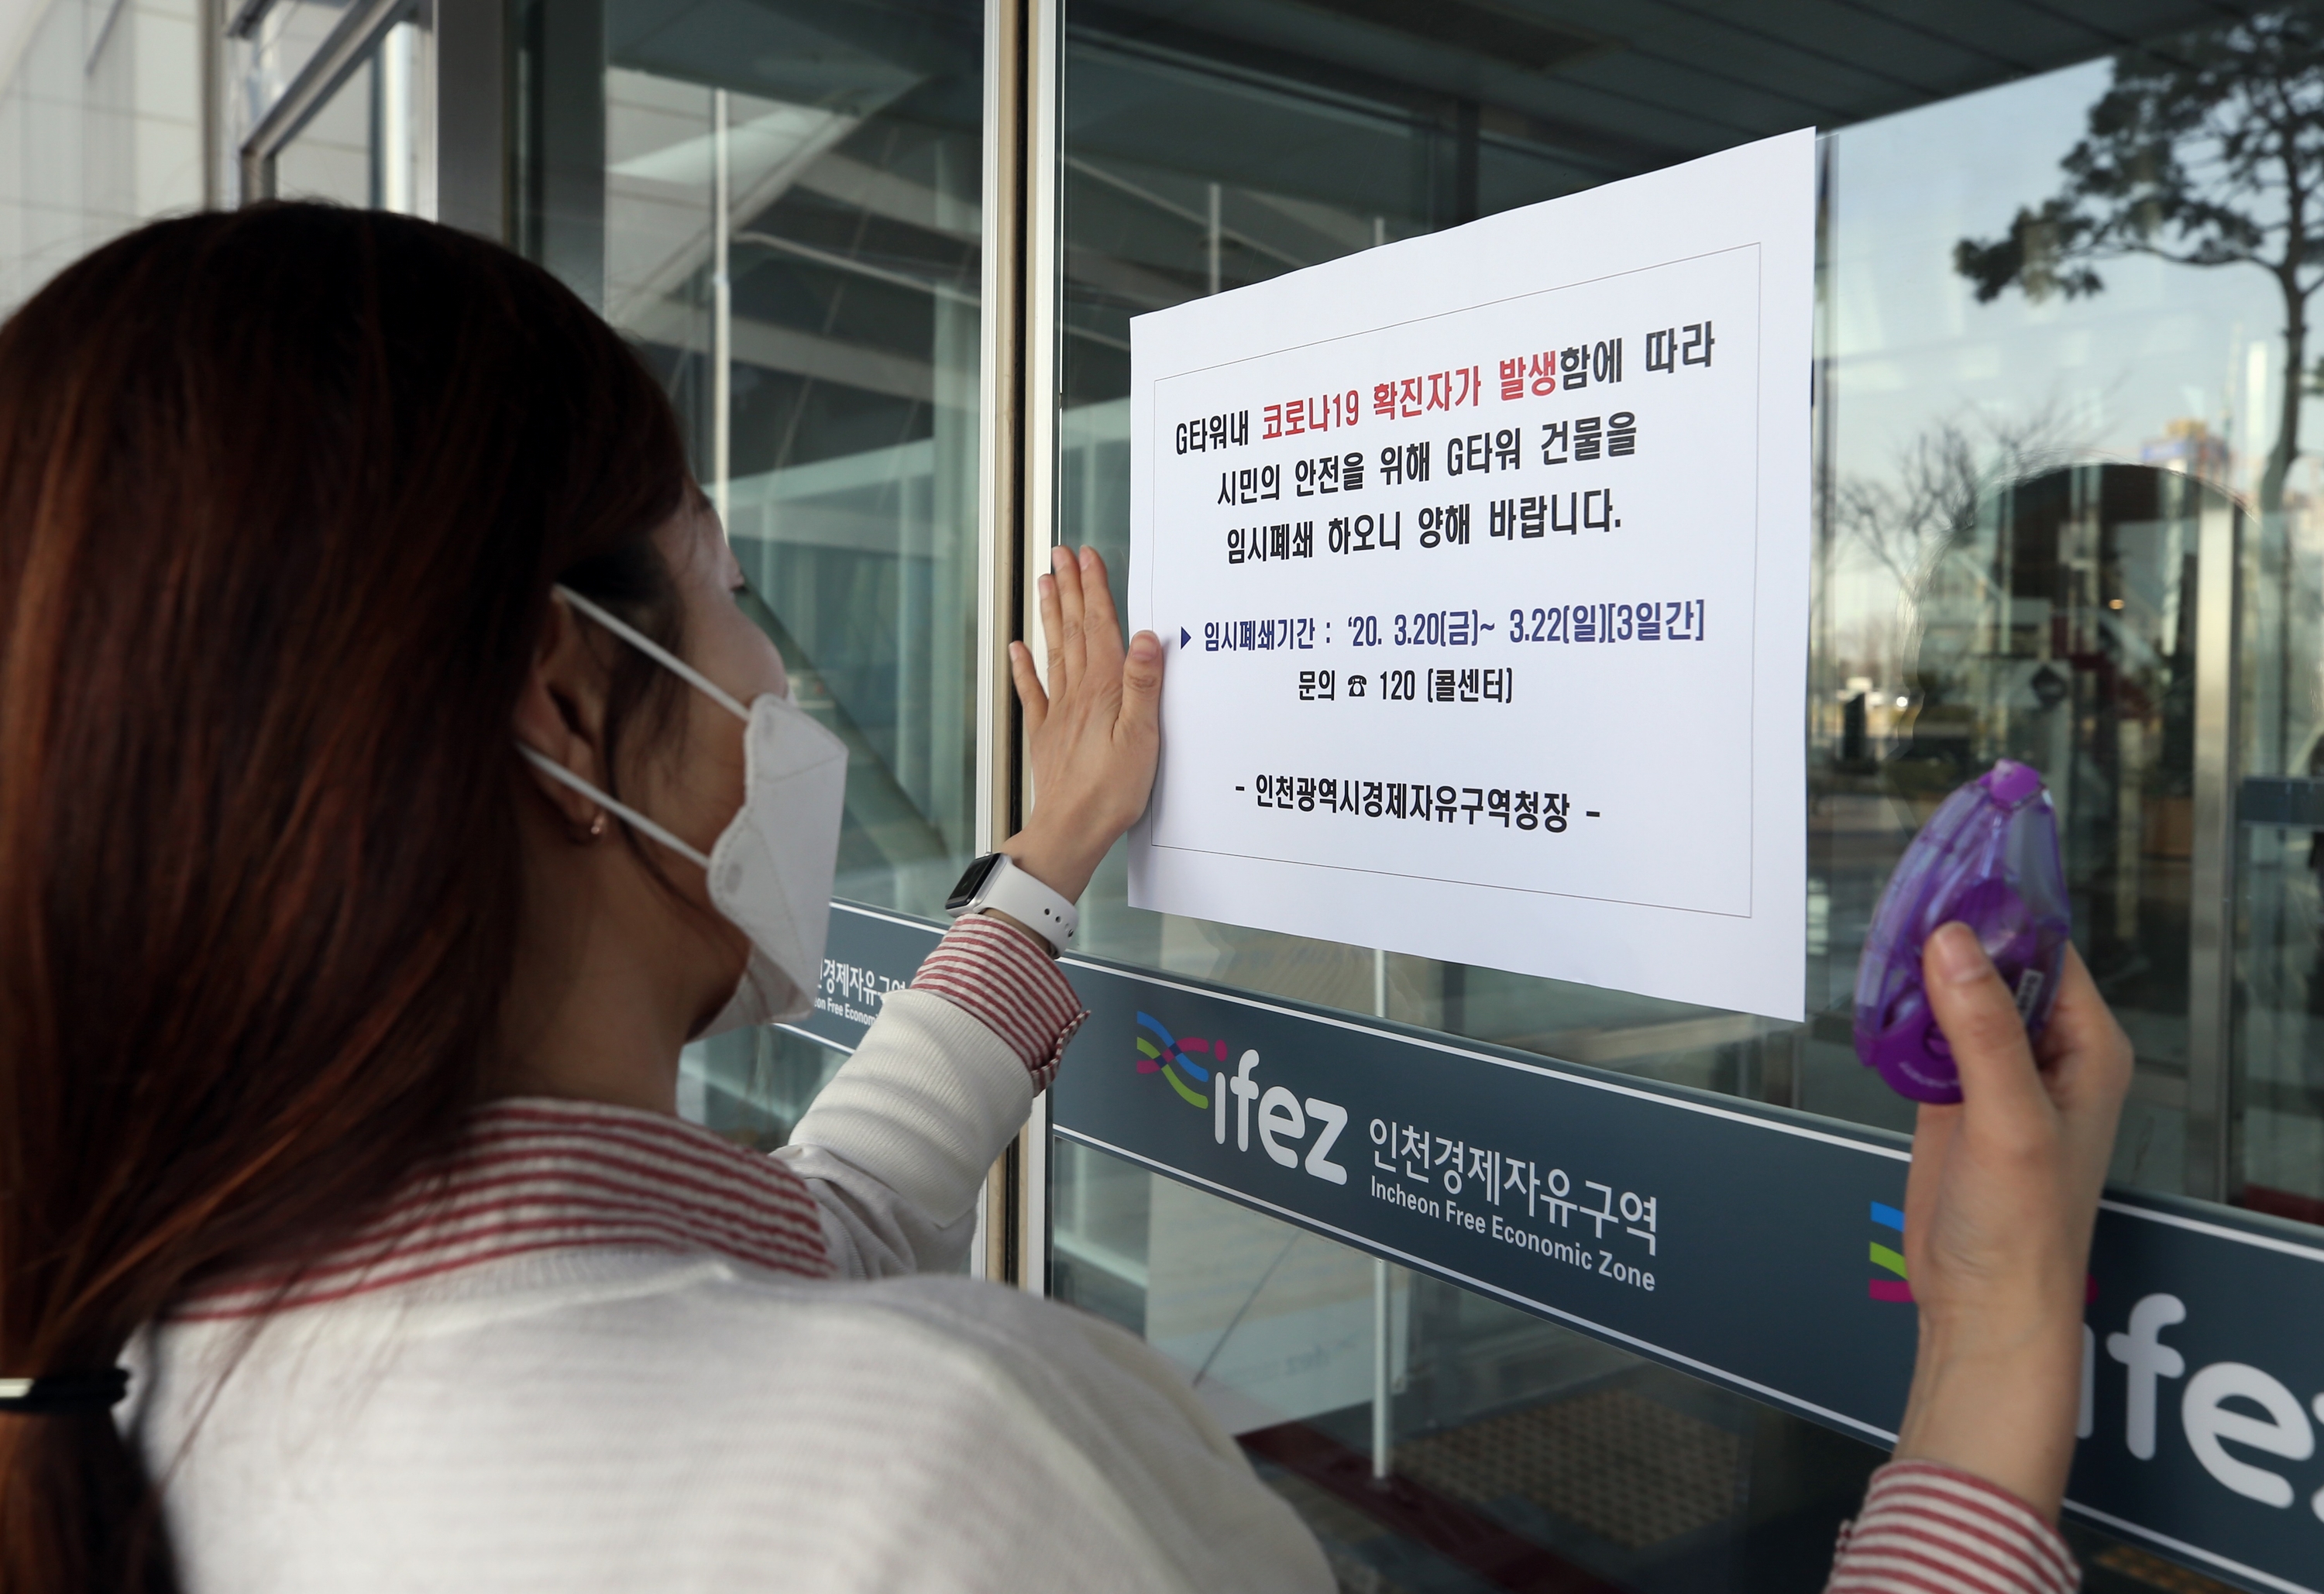 인천경제자유구역청 직원이 20일 G타워 정문 출입구에 일시 폐쇄를 알리는 안내문을 부착하고 있다.<br>